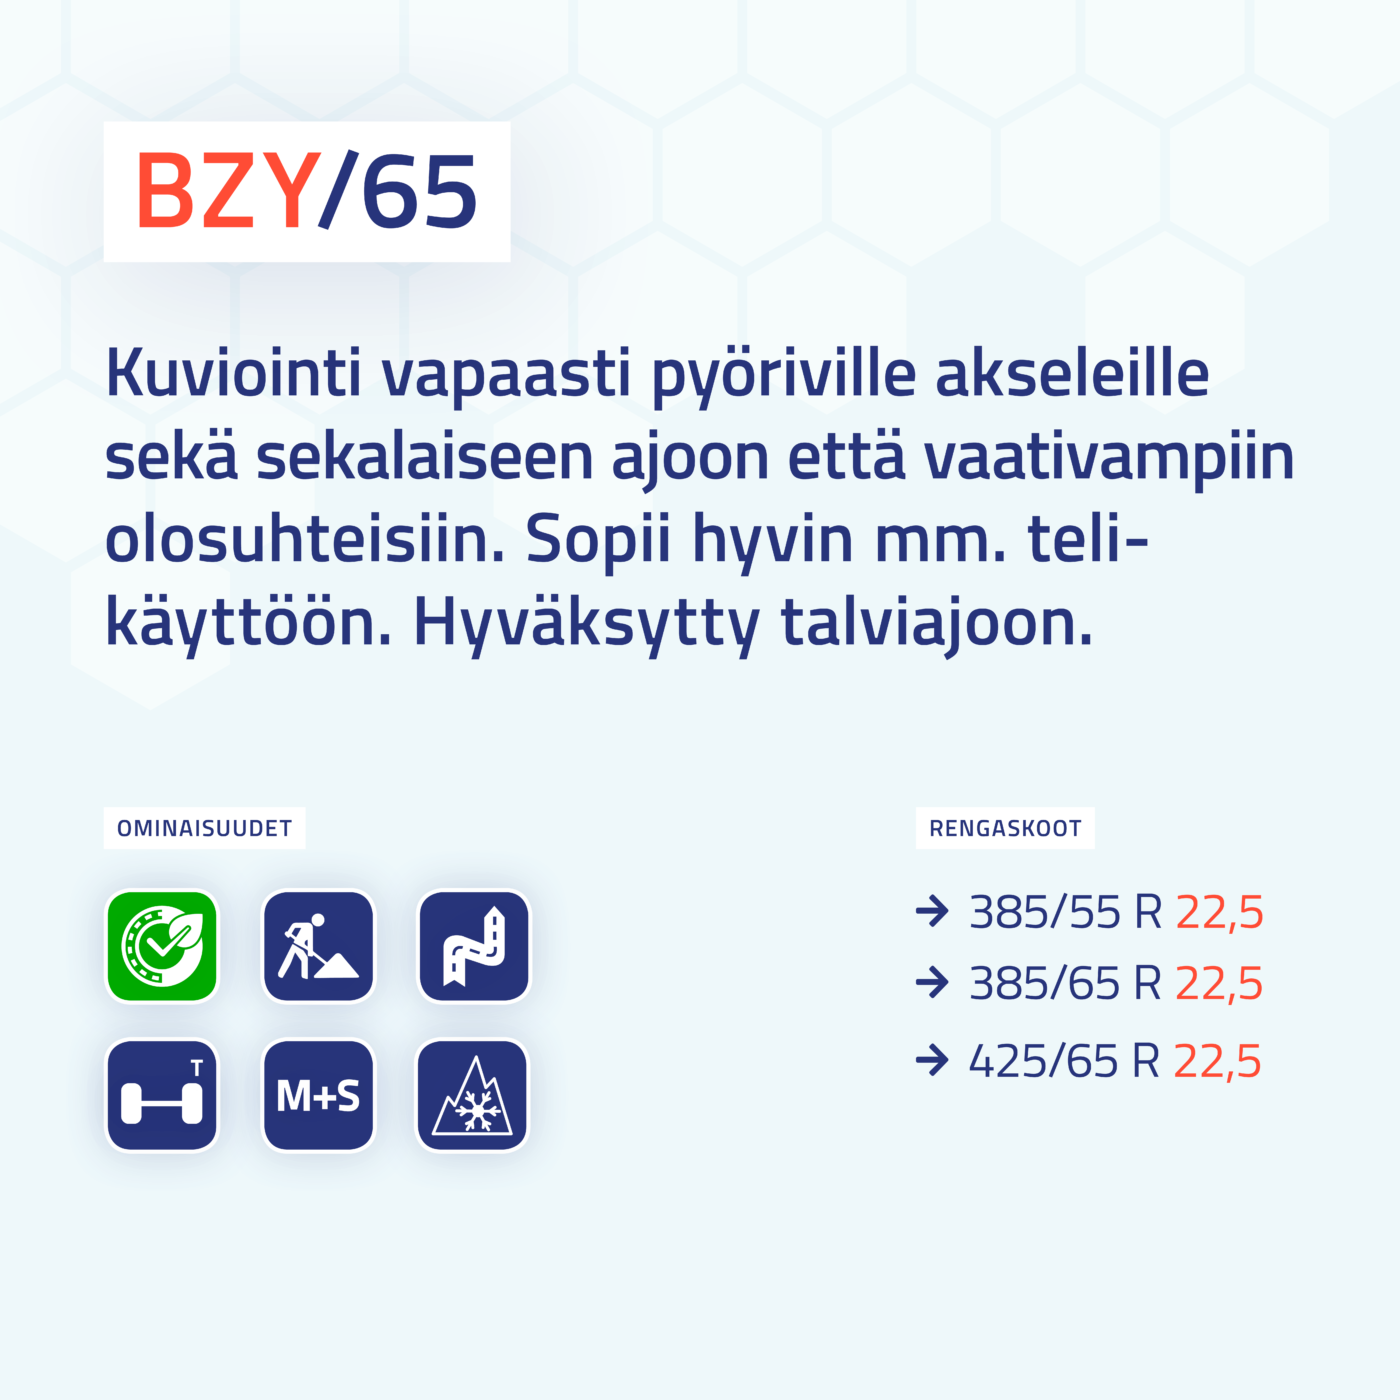 Boss BZY/65